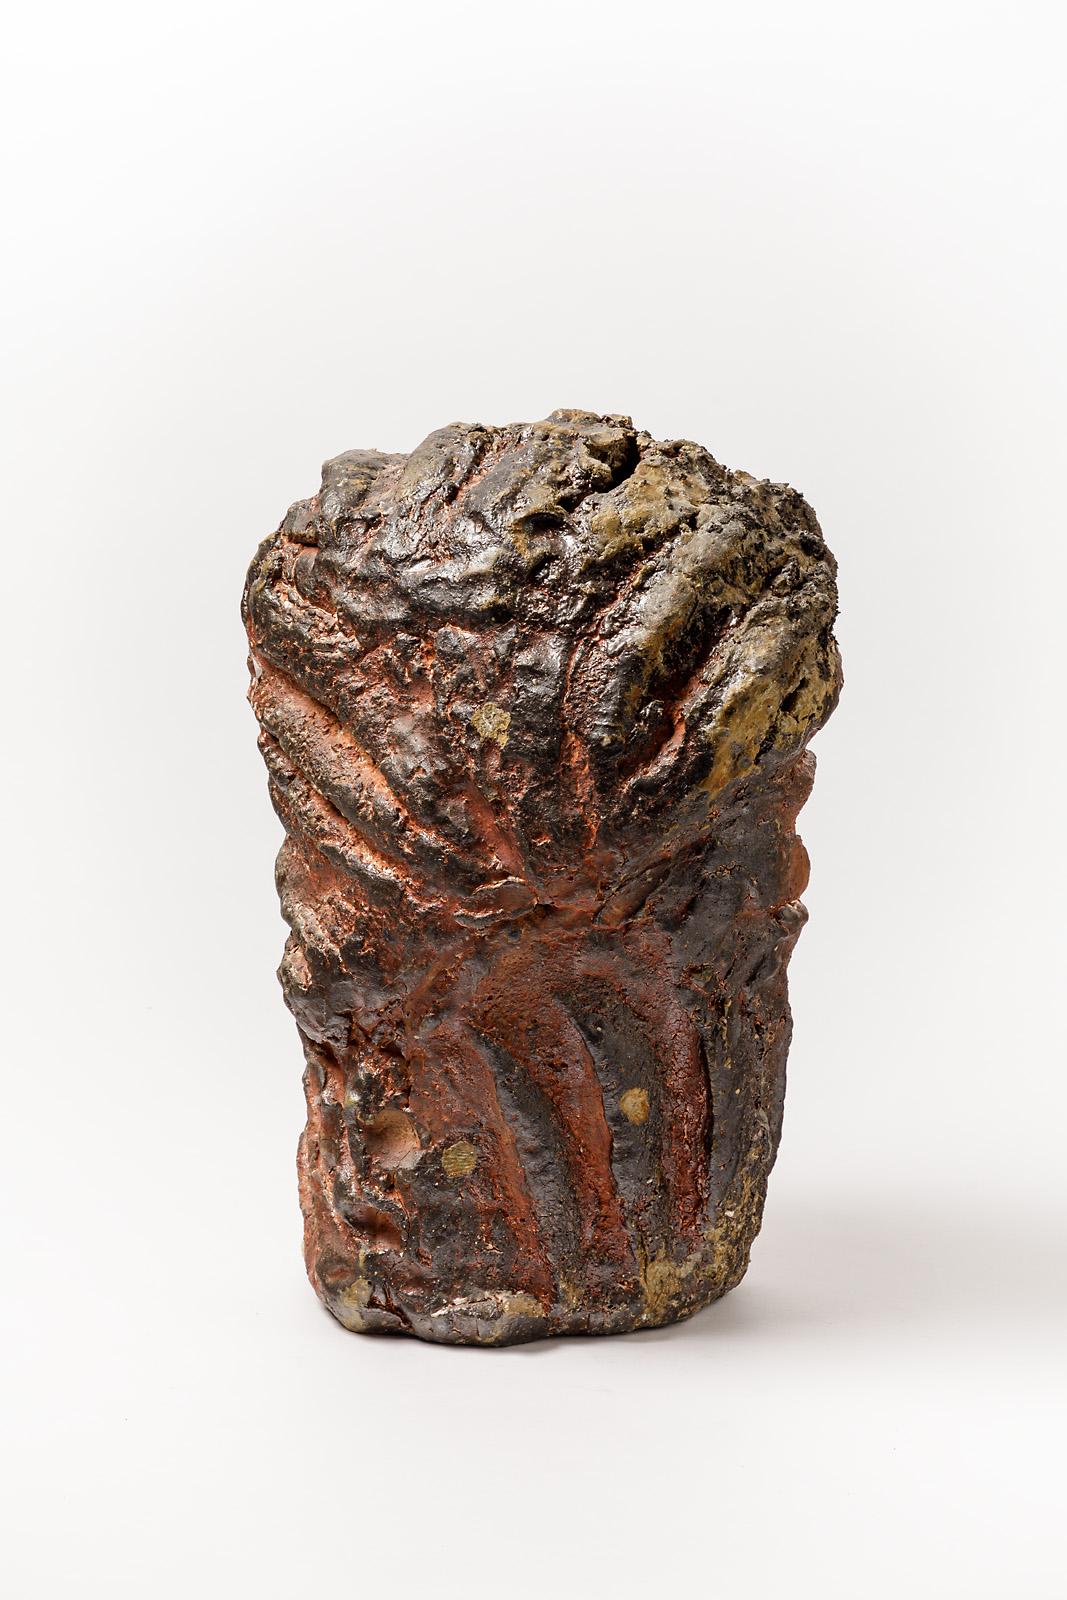 Hervé Rousseau

Sculpture abstraite en céramique grès de l'artiste français.

Elégant grès brun émaillé d'effets de cuisson.

Signé sous la base, réalisé vers 2015.

Mesures : Hauteur 45 cm, largeur 30 cm, profondeur 20 cm.

 